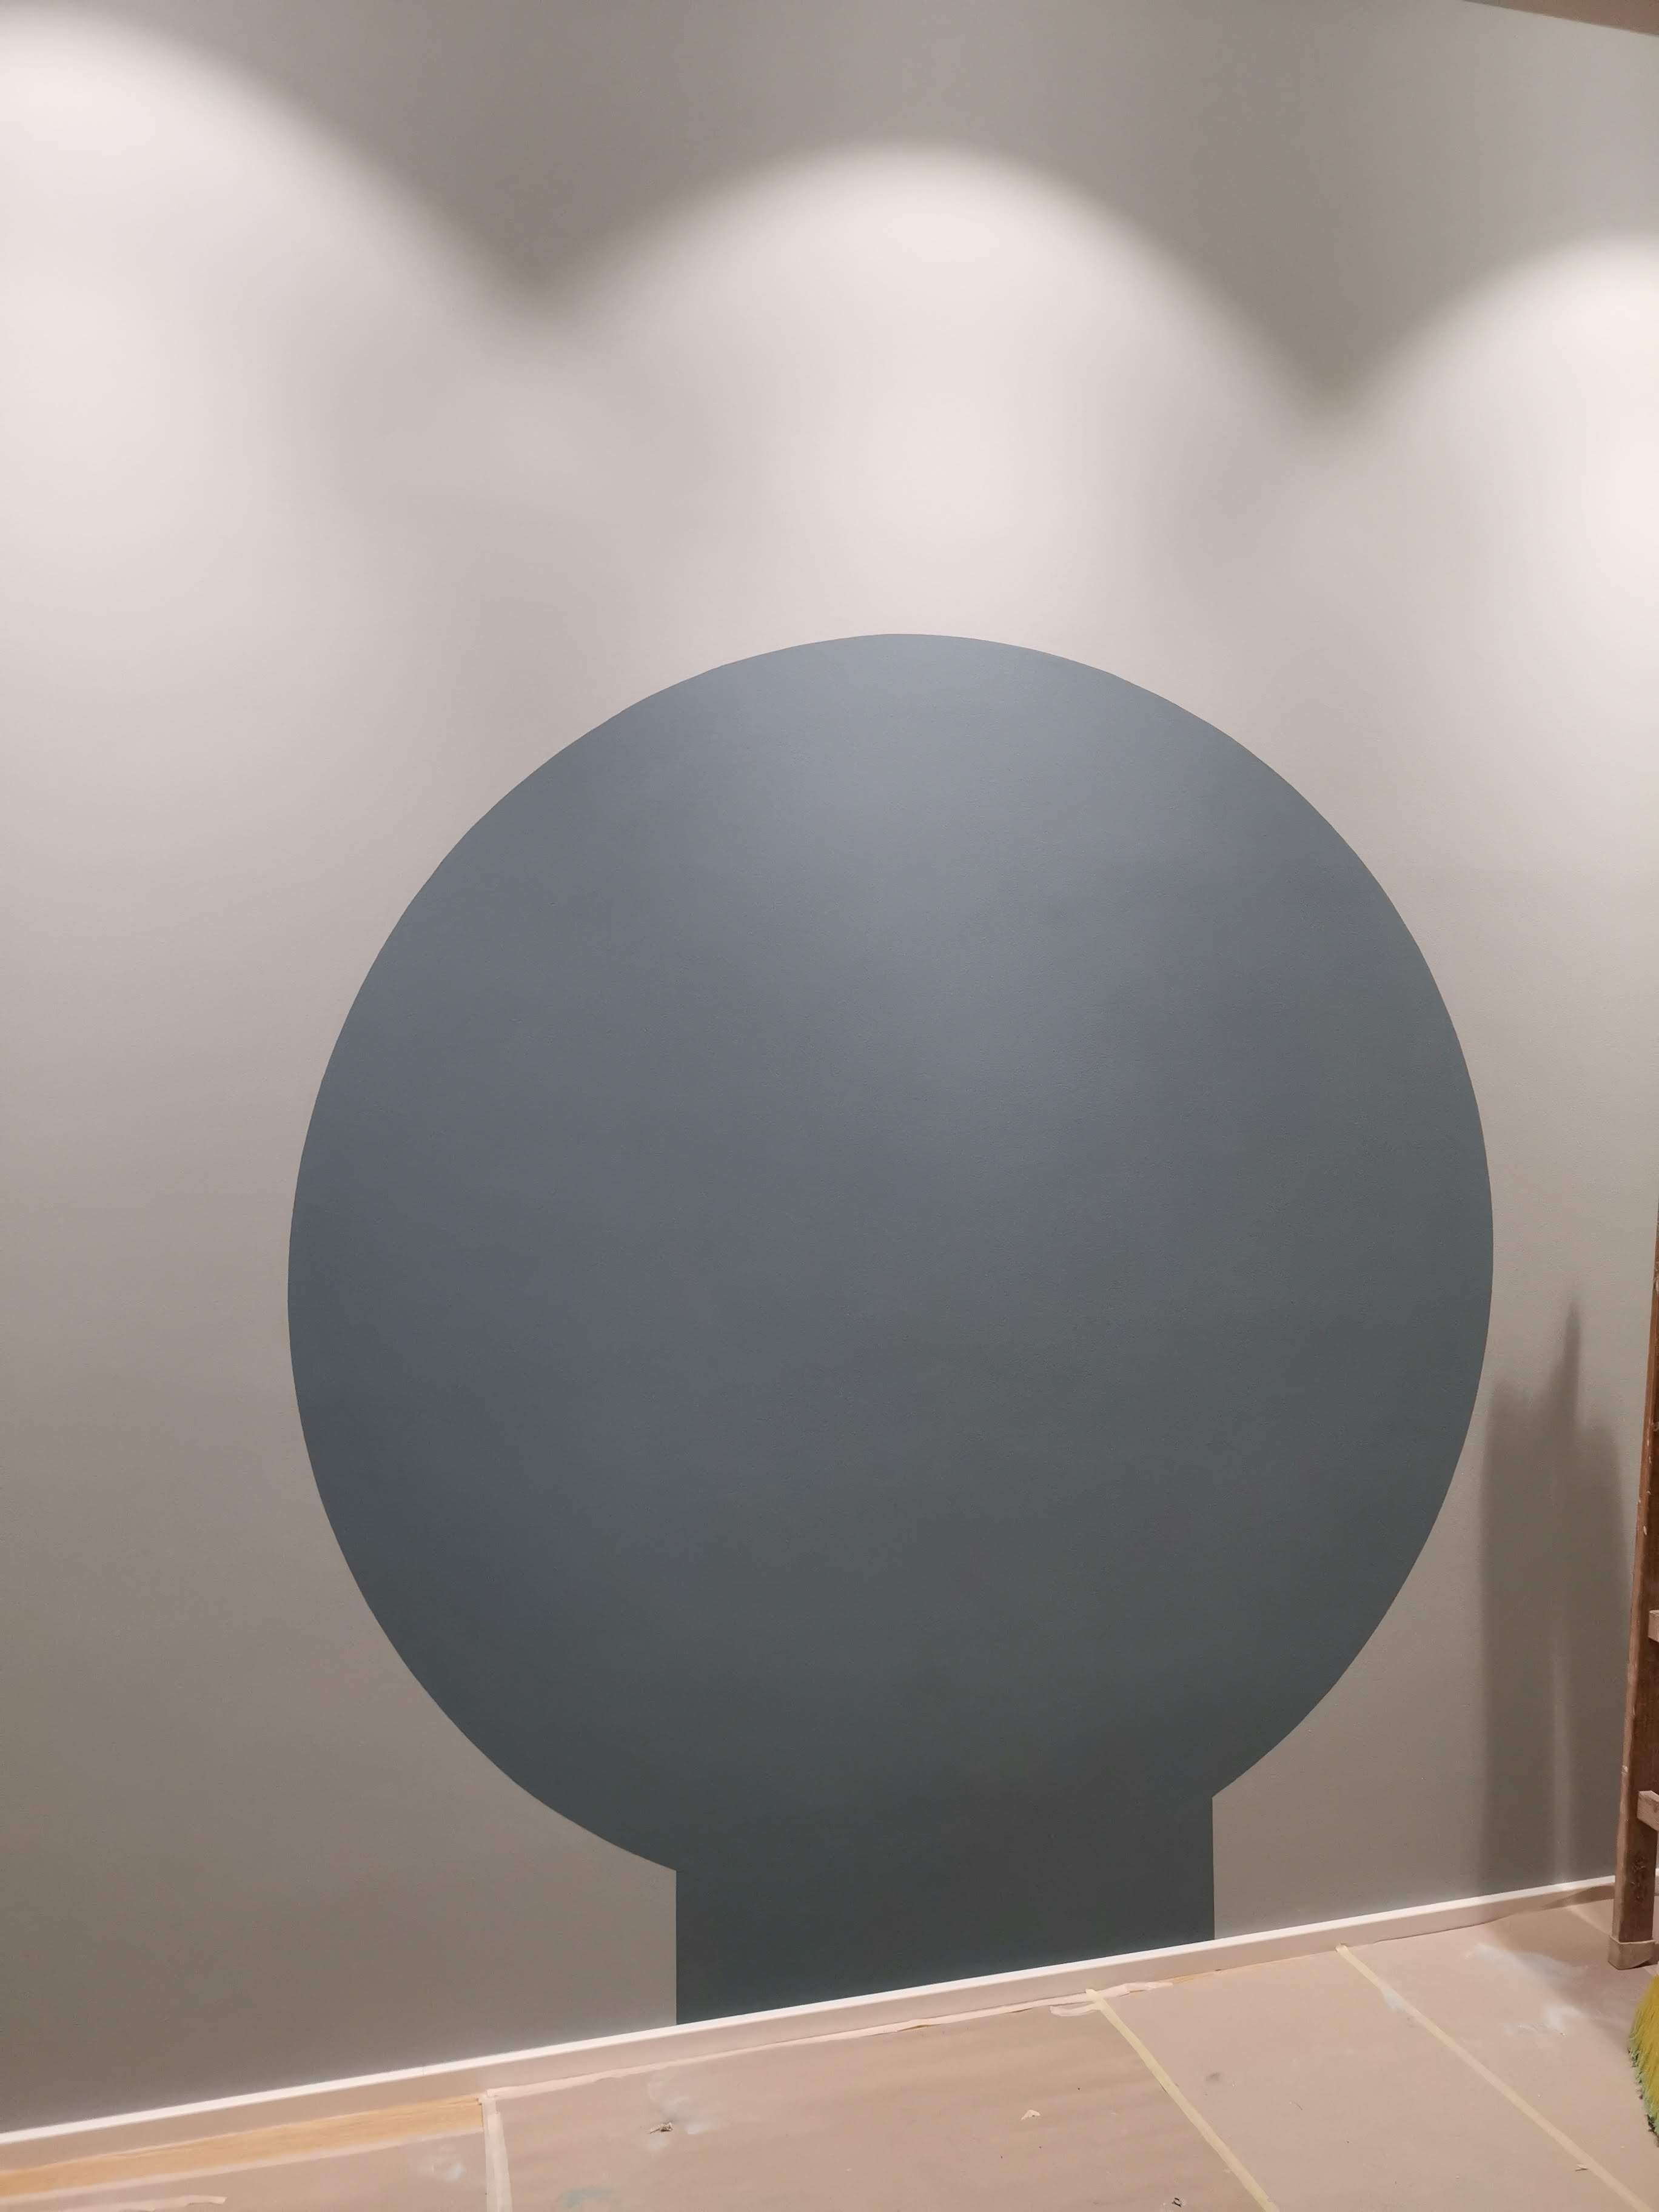 Innenansicht eines großen gemalten grauen Kreises auf einer weißen Wand